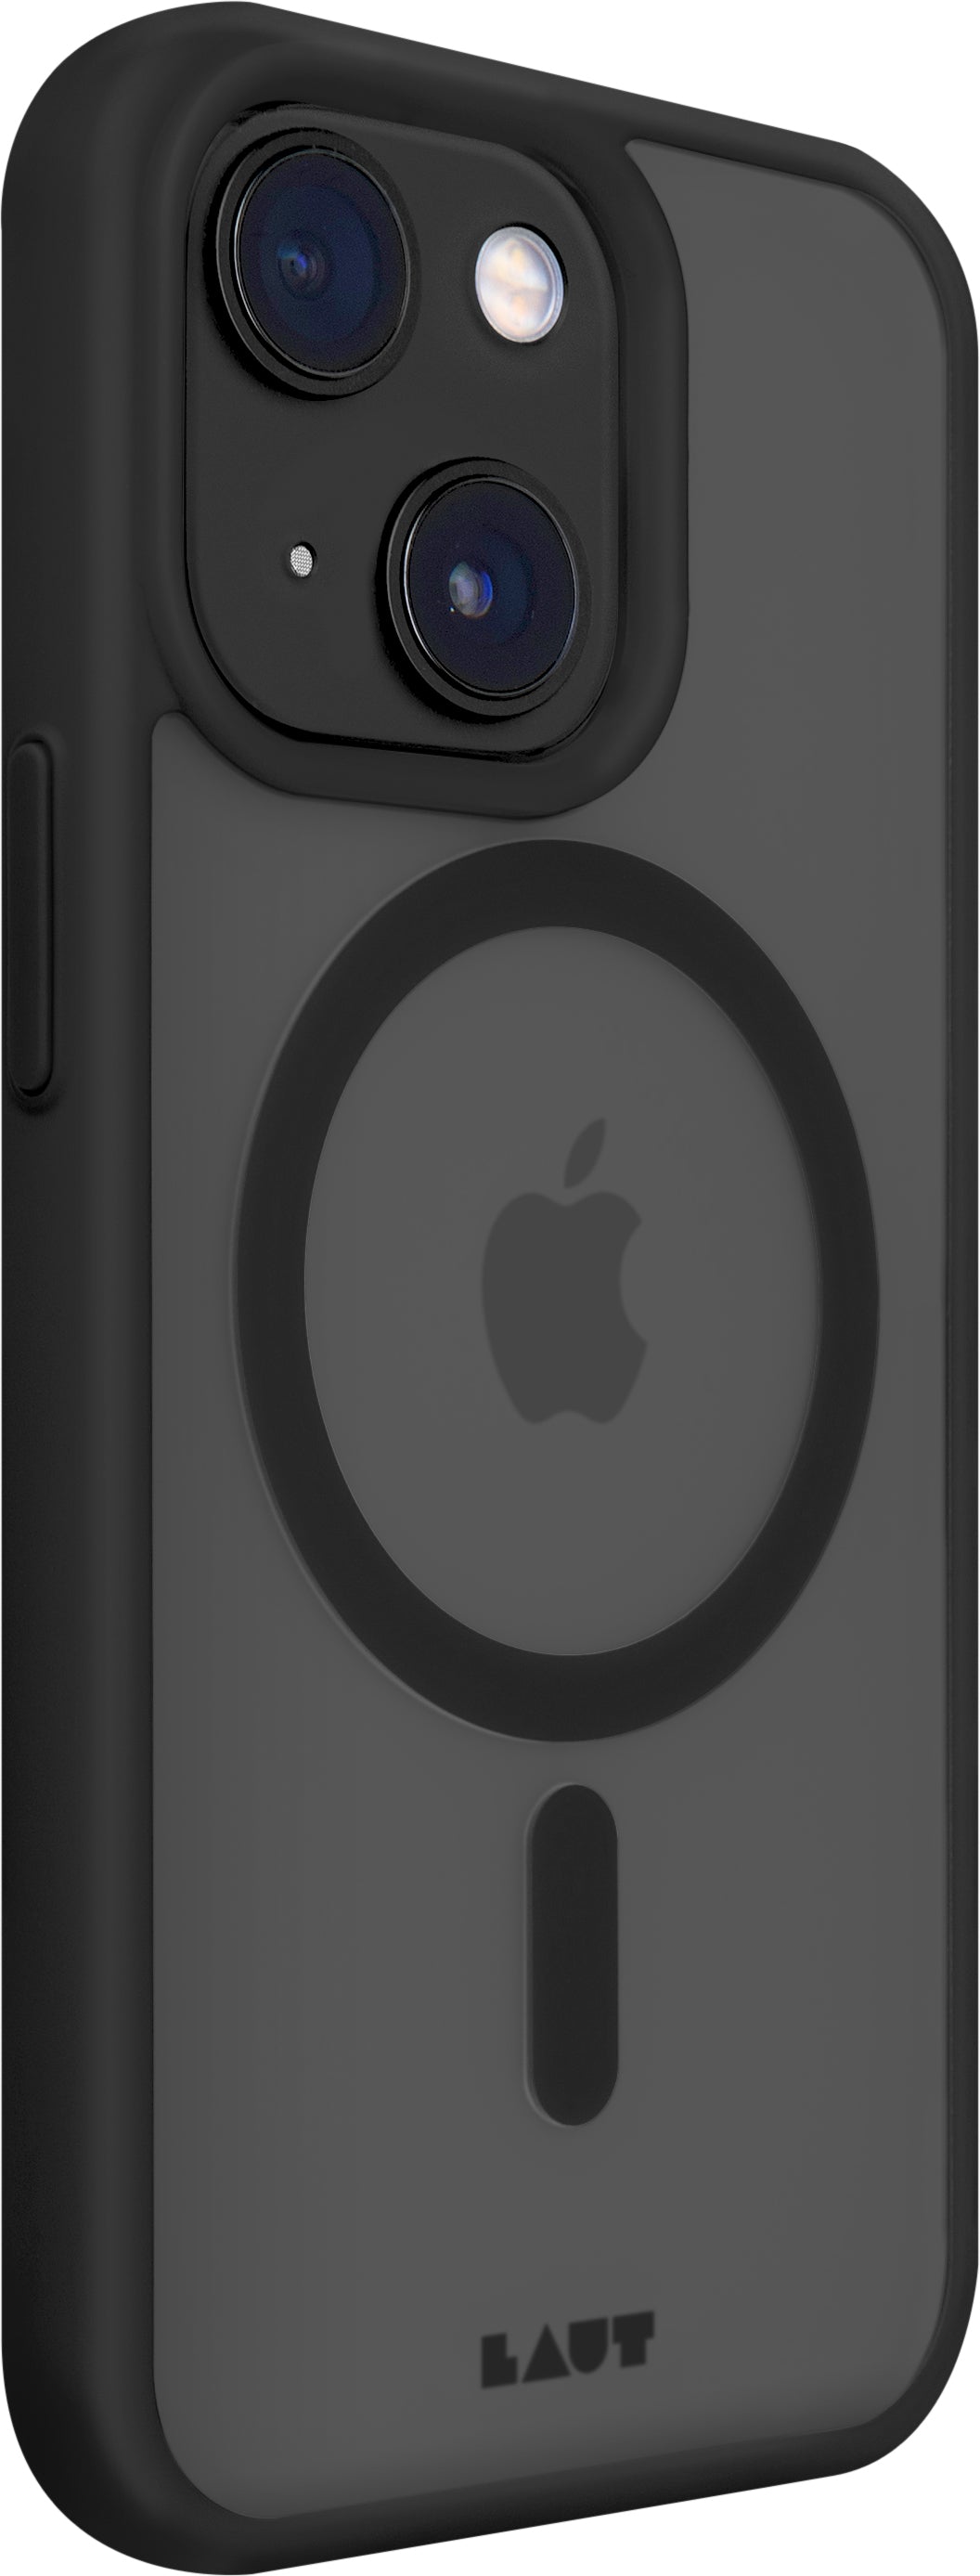 Funda para iPhone 14 Huex Protect de Laut iPhone 14 Negro - Rossellimac